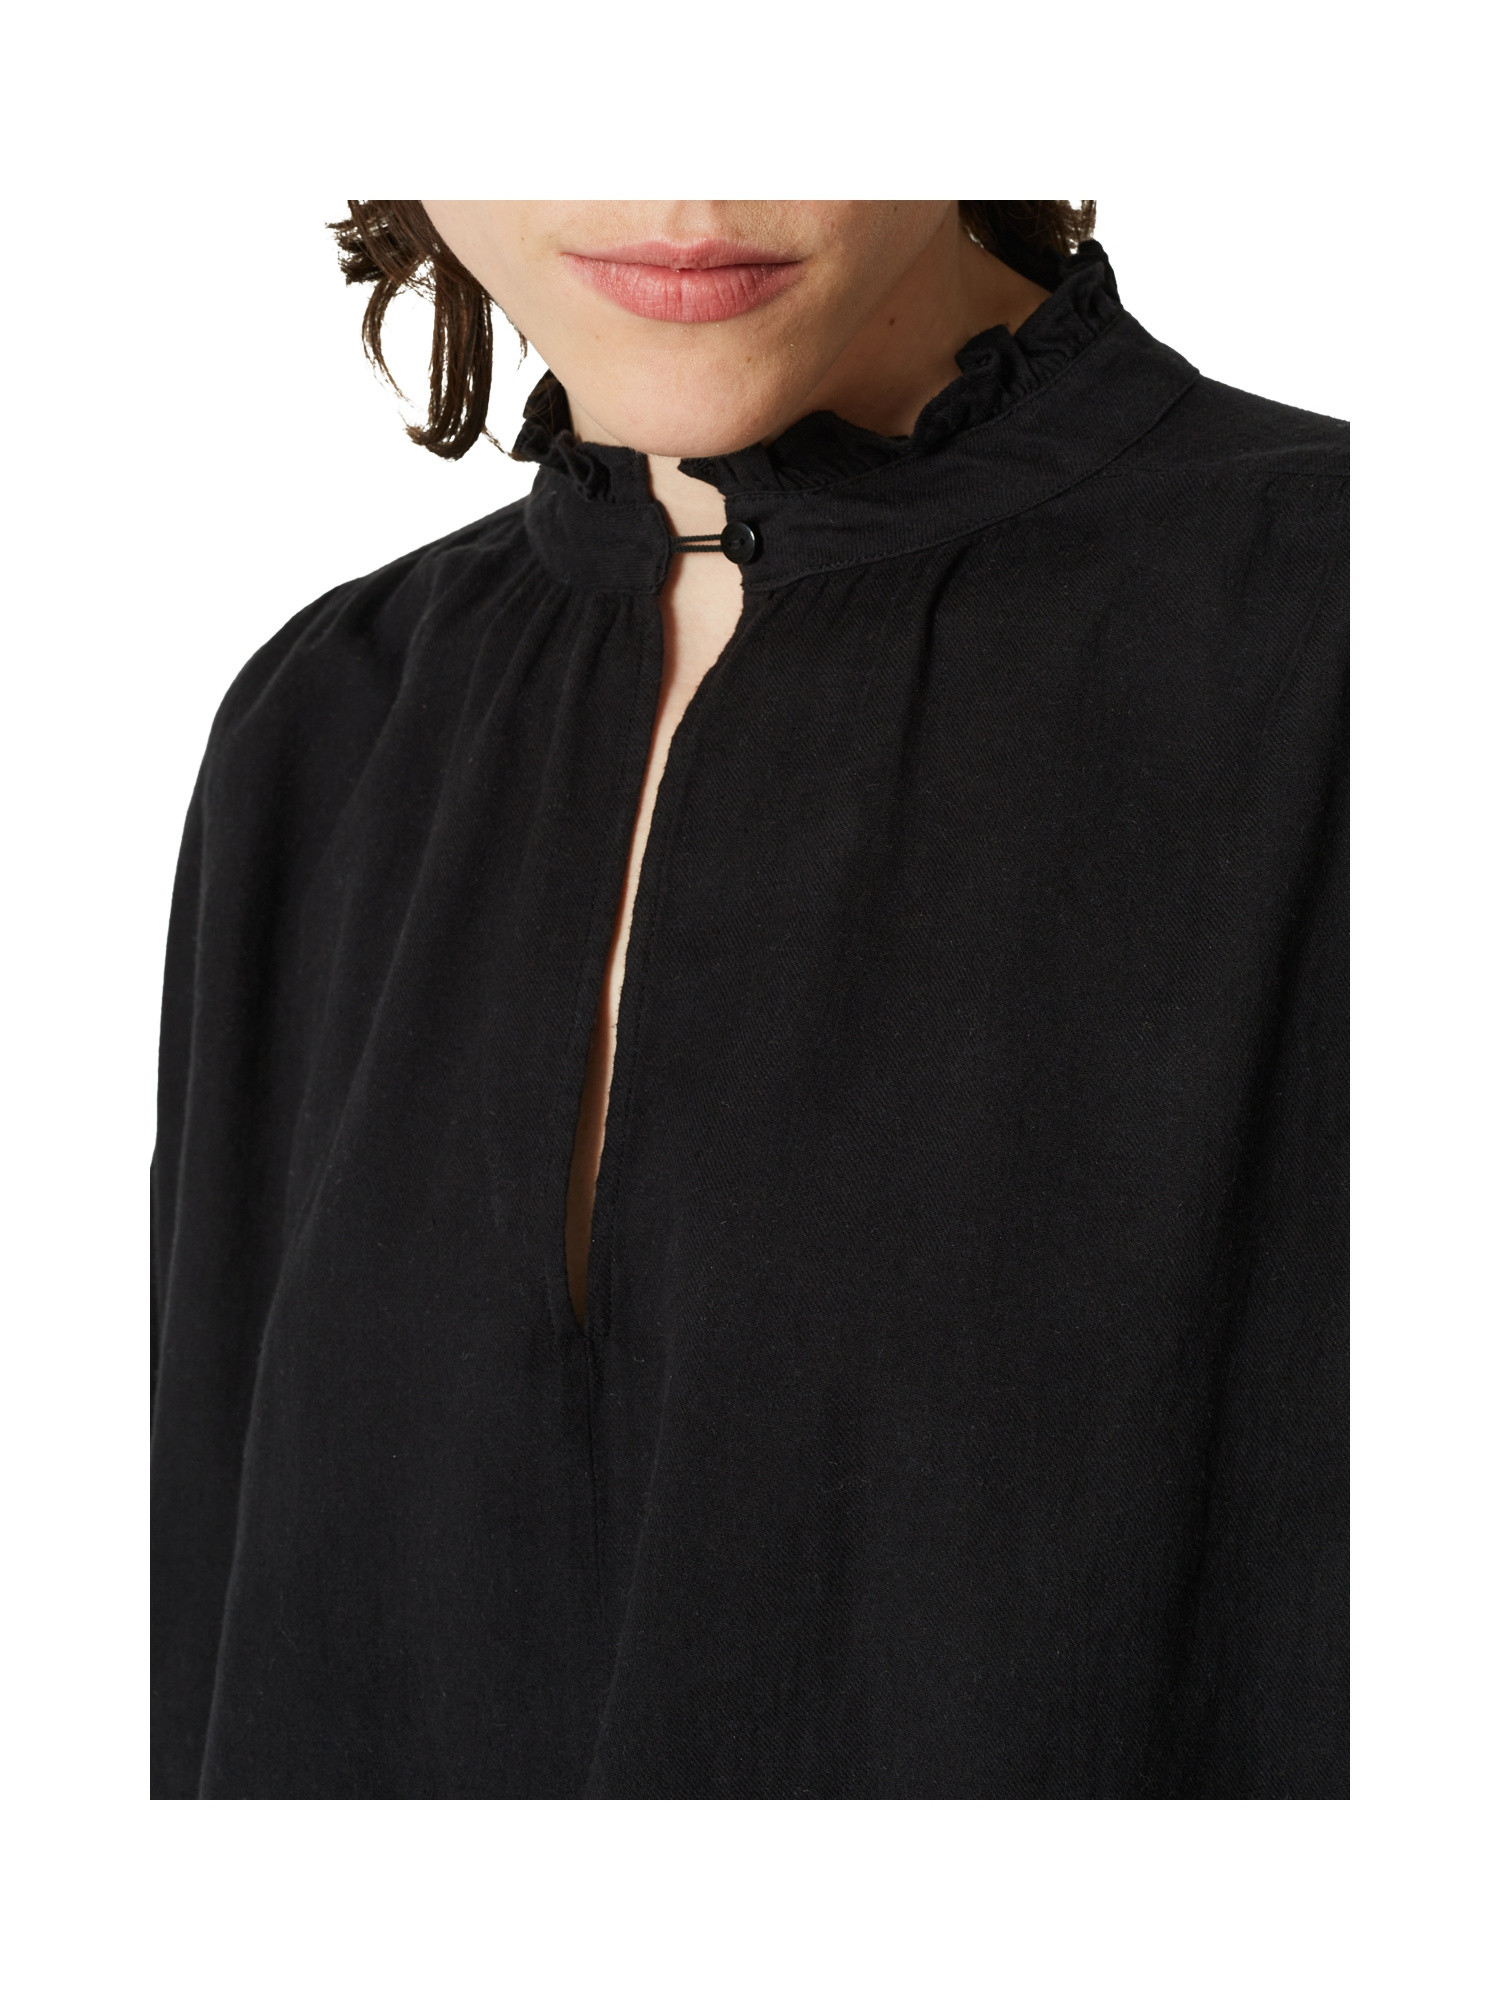 Blusa in cotone con maniche lunghe, Nero, large image number 5